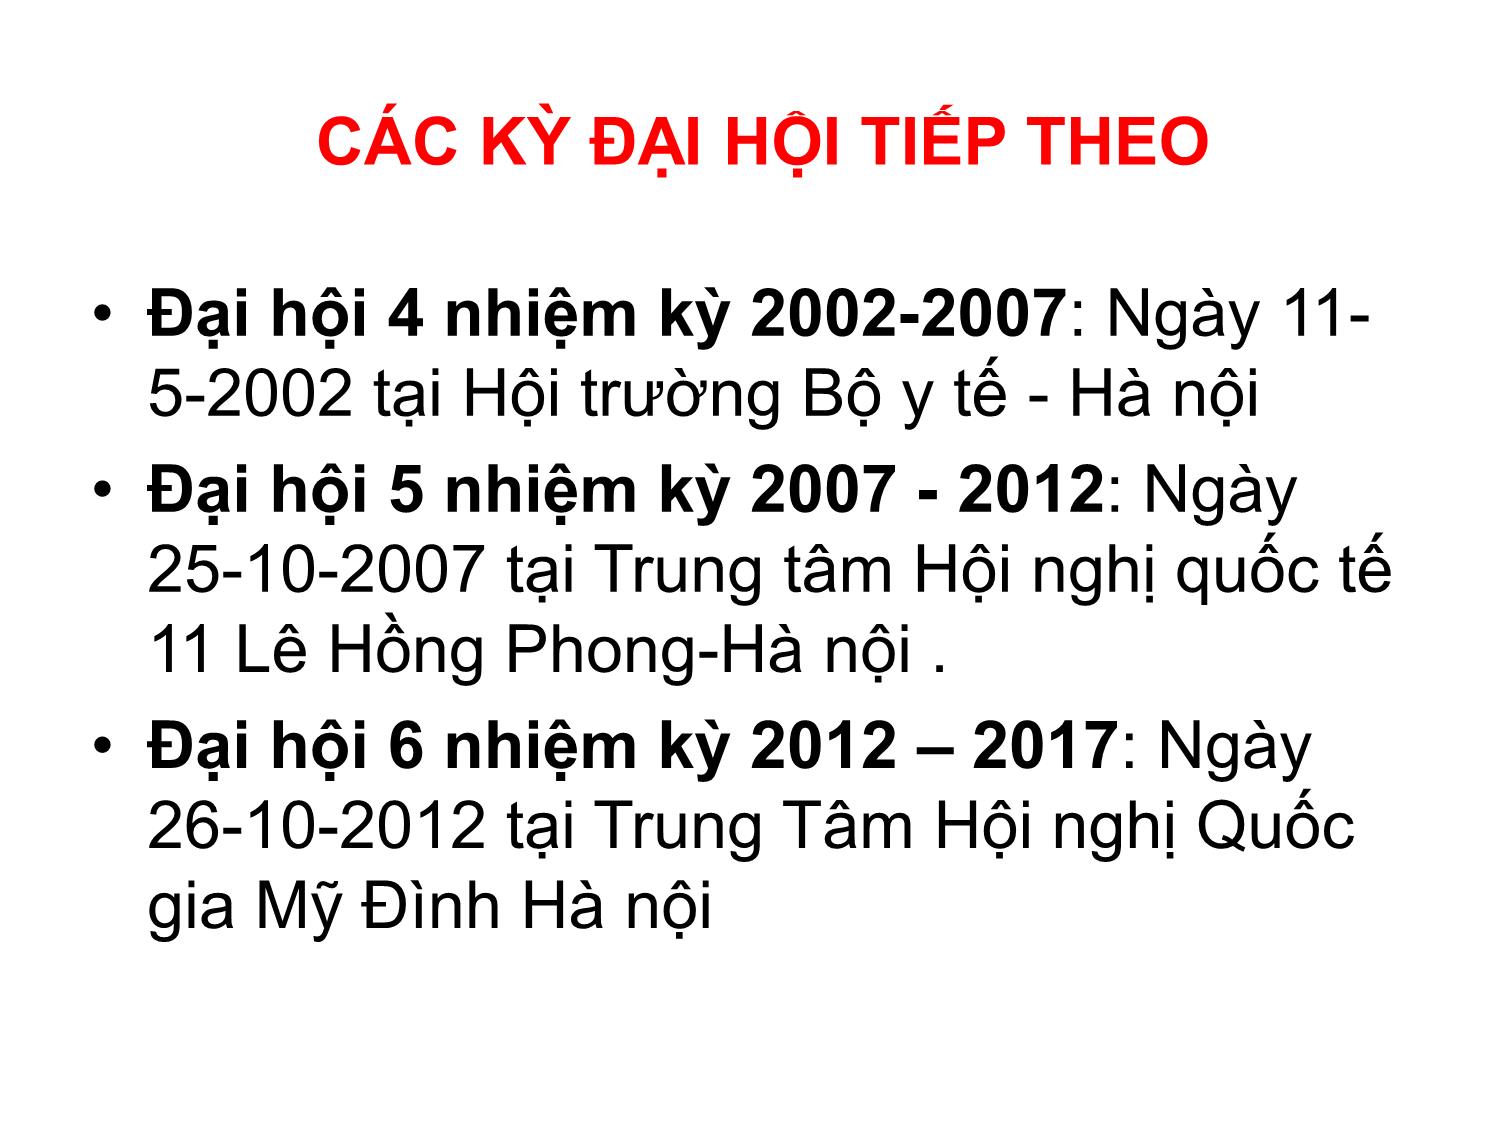 Kế hoạch tăng cường năng lực hội điều dưỡng và phát triển nghề điều dưỡng Việt Nam giai đoạn 2010 - 2015 trang 8